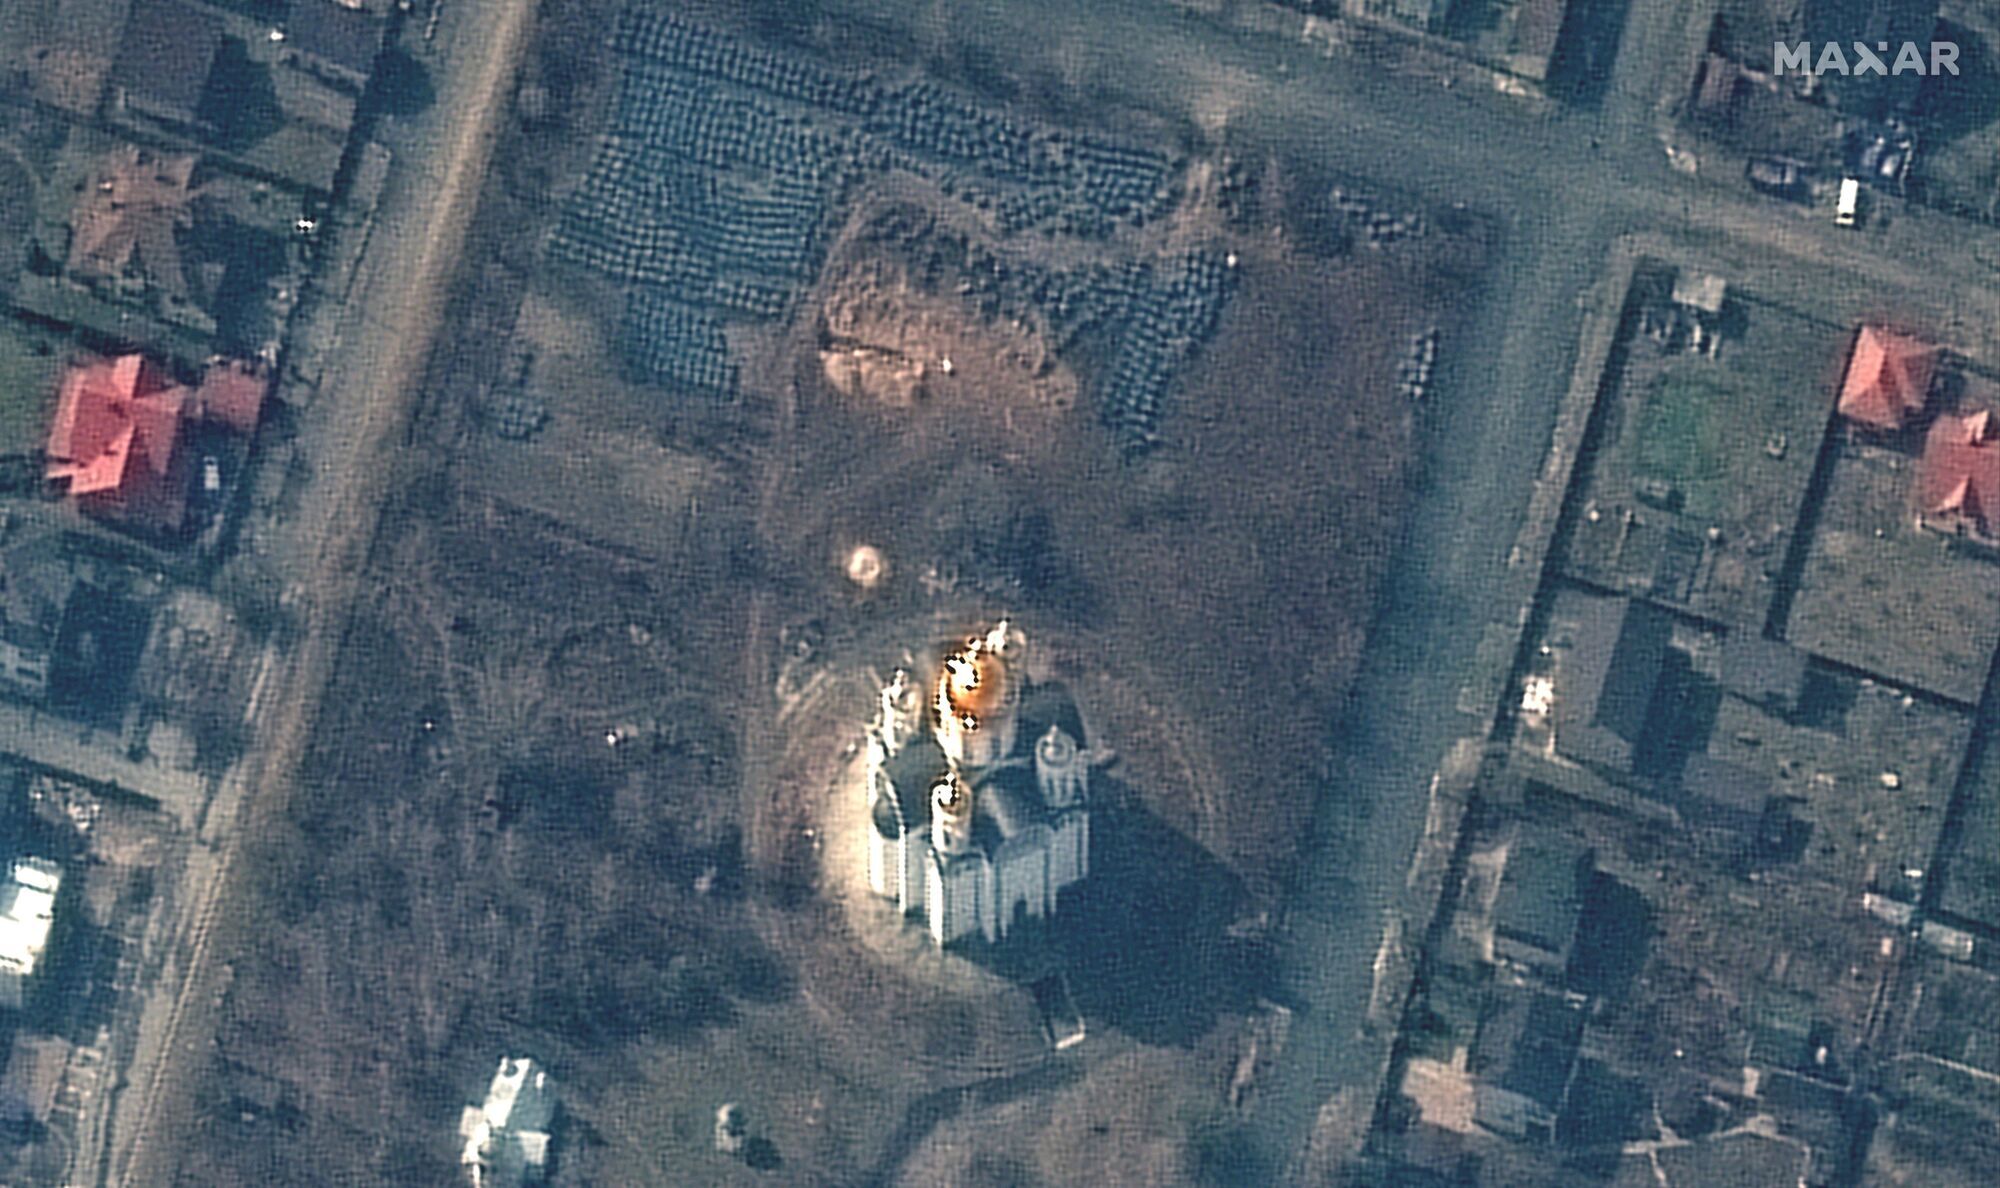 На спутниковом снимке от 31 марта видно место захоронения с траншеей длиной примерно 13,7 метра